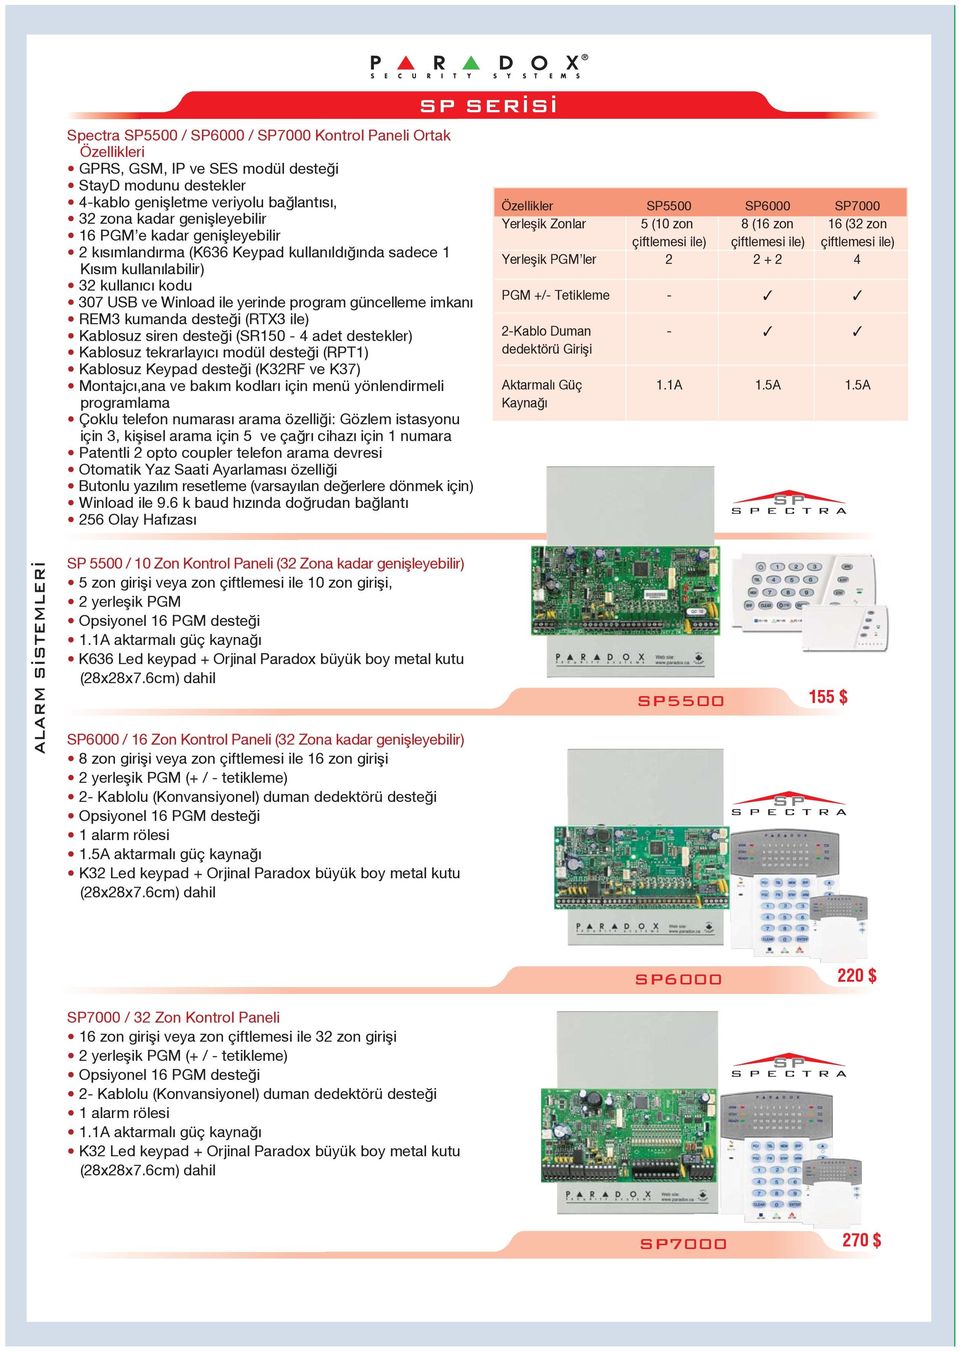 (RTX3 ile) Kablosuz siren deste i (SR150-4 adet destekler) Kablosuz tekrarlay c modül deste i (RPT1) Kablosuz Keypad deste i (K32RF ve K37) Montajc,ana ve bak m kodlar için menü yönlendirmeli